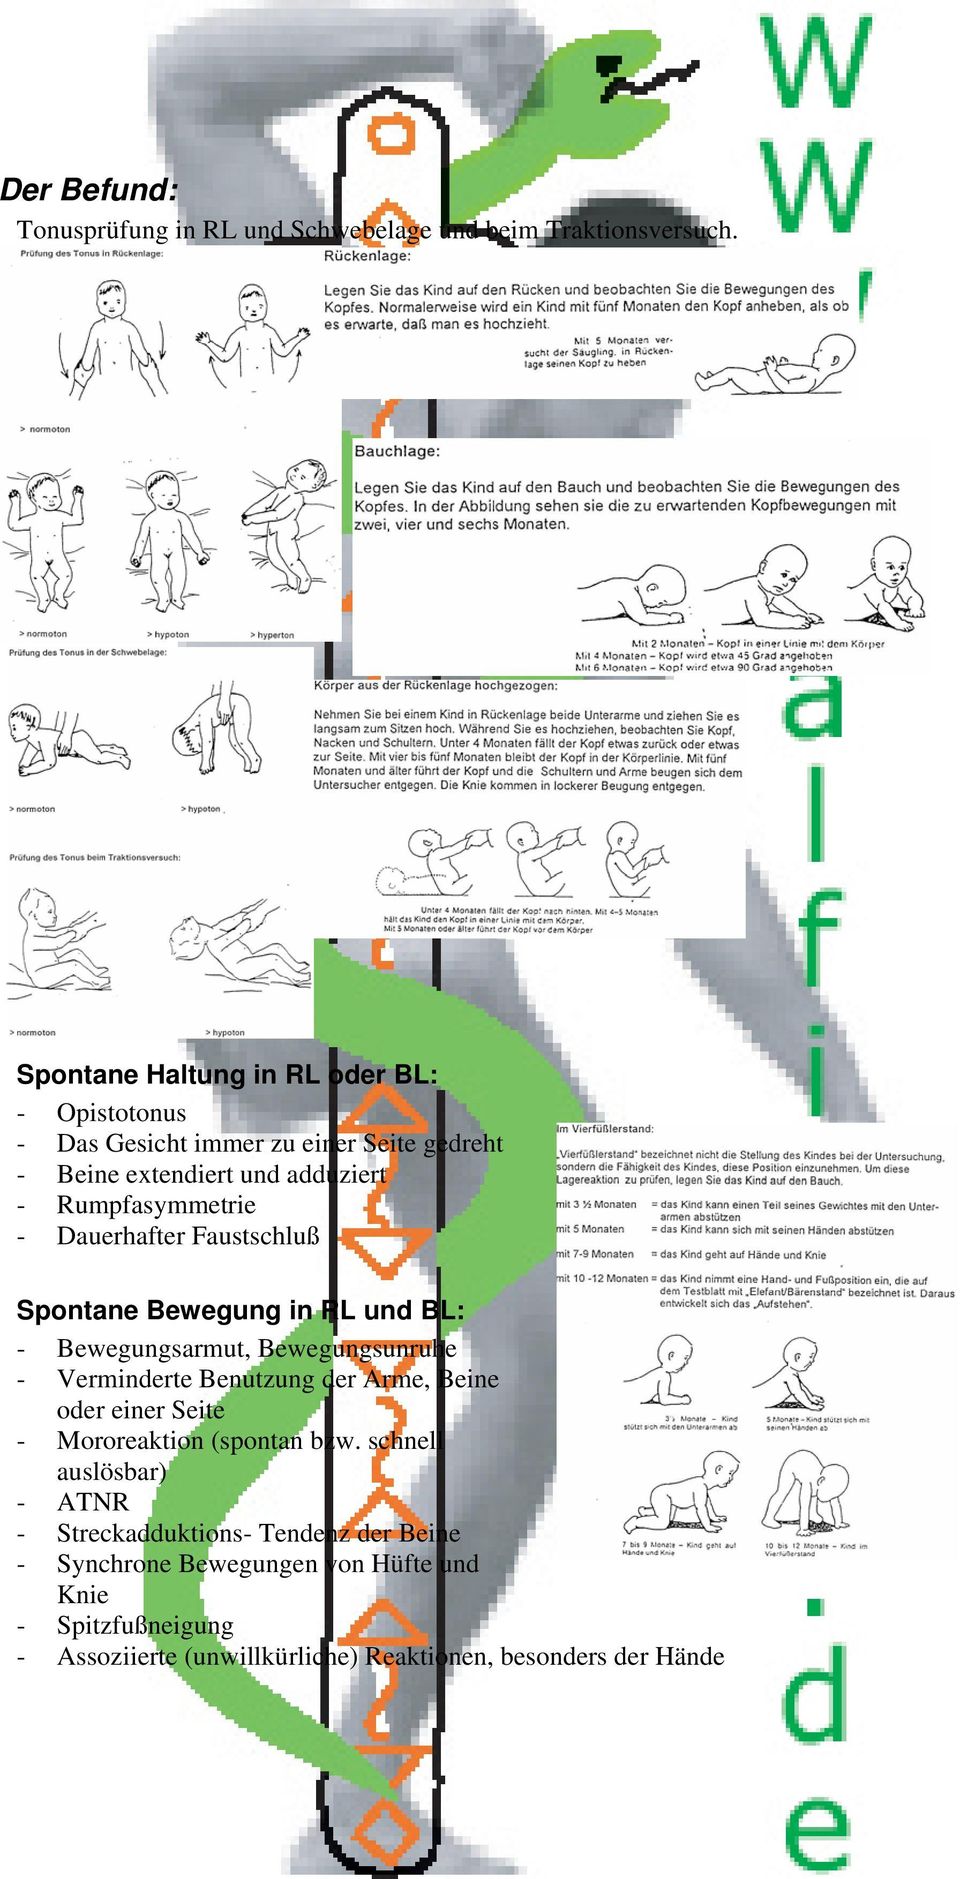 Dauerhafter Faustschluß Spontane Bewegung in RL und BL: - Bewegungsarmut, Bewegungsunruhe - Verminderte Benutzung der Arme, Beine oder einer